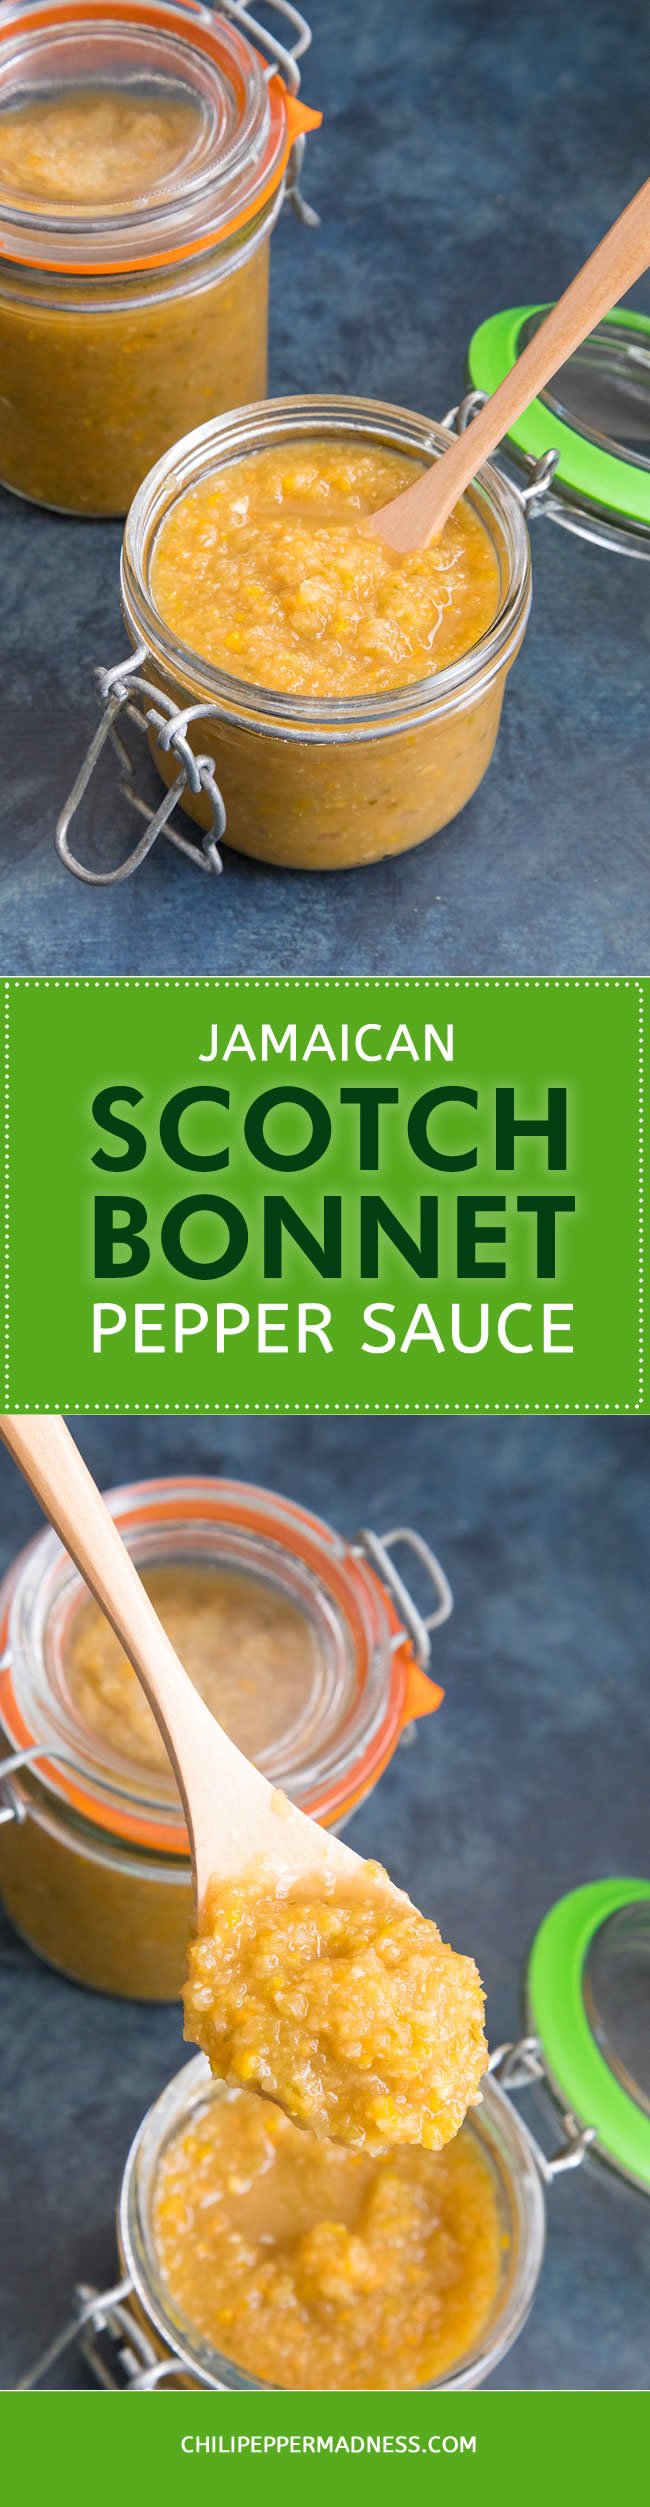 Jamaican Scotch Bonnet Pepper Sauce - Recipe